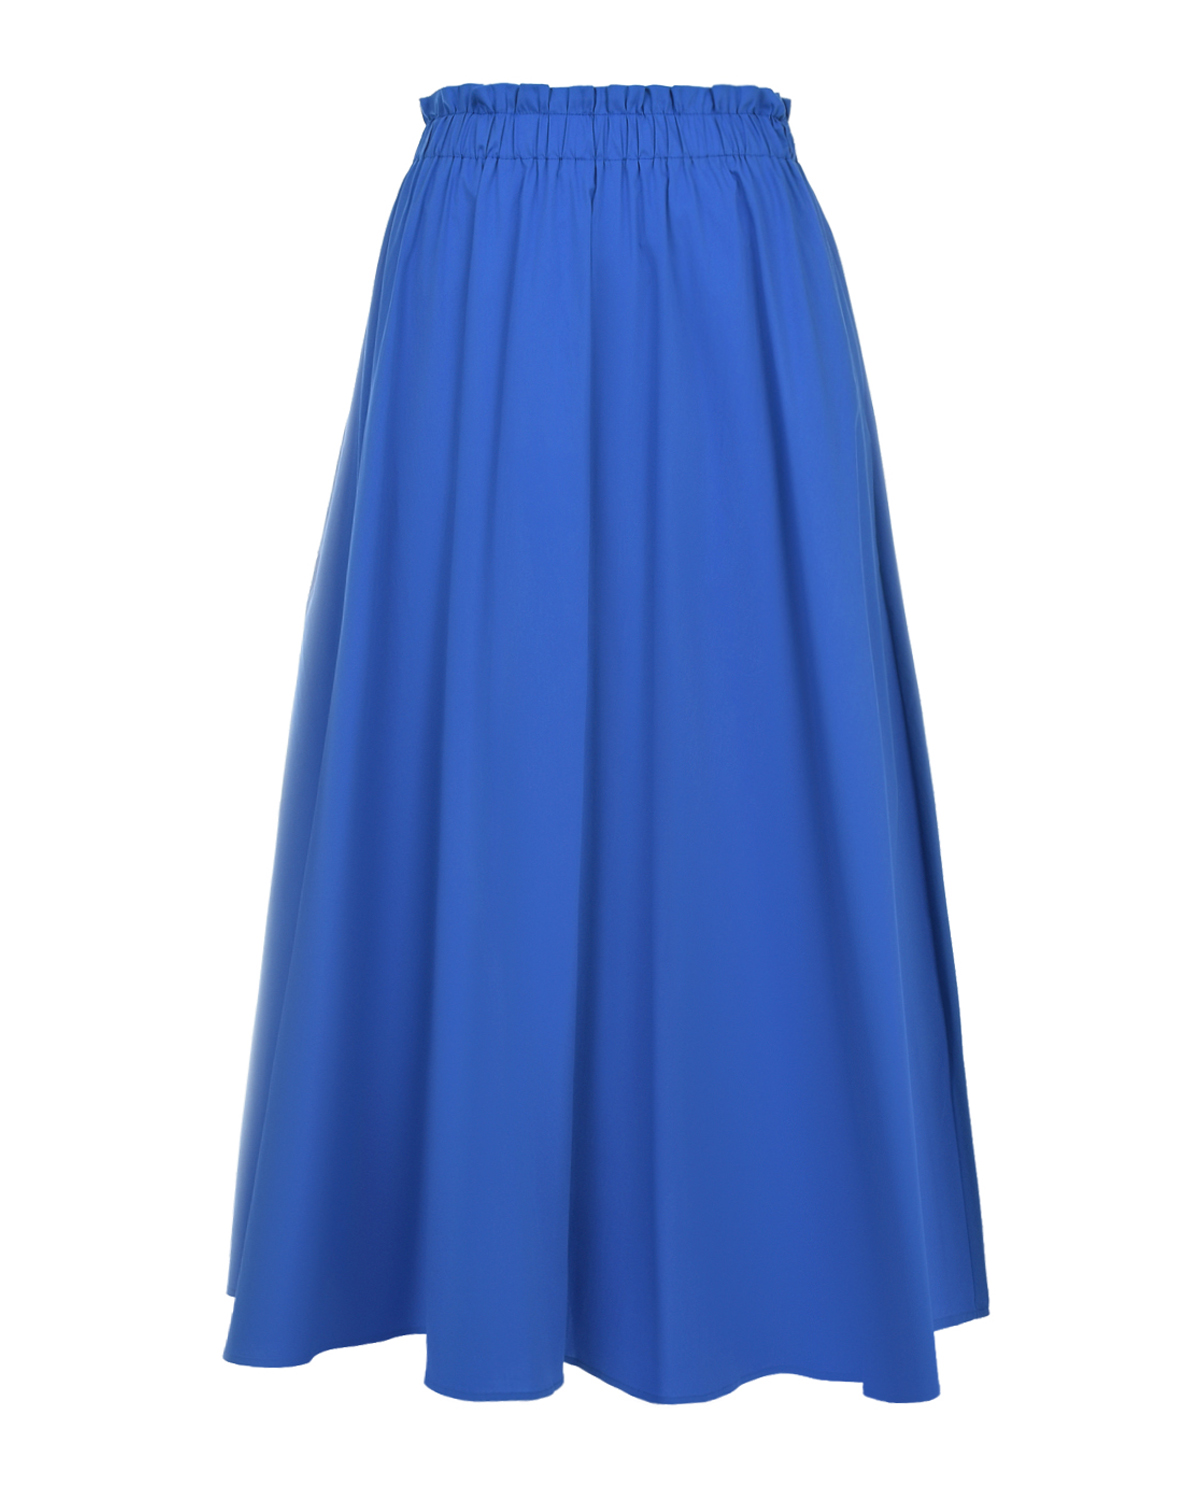 Синяя юбка с поясом на резинке Pietro Brunelli синяя юбка мини в складку с принтом в клетку для девочки gsk017549 9 10л 140